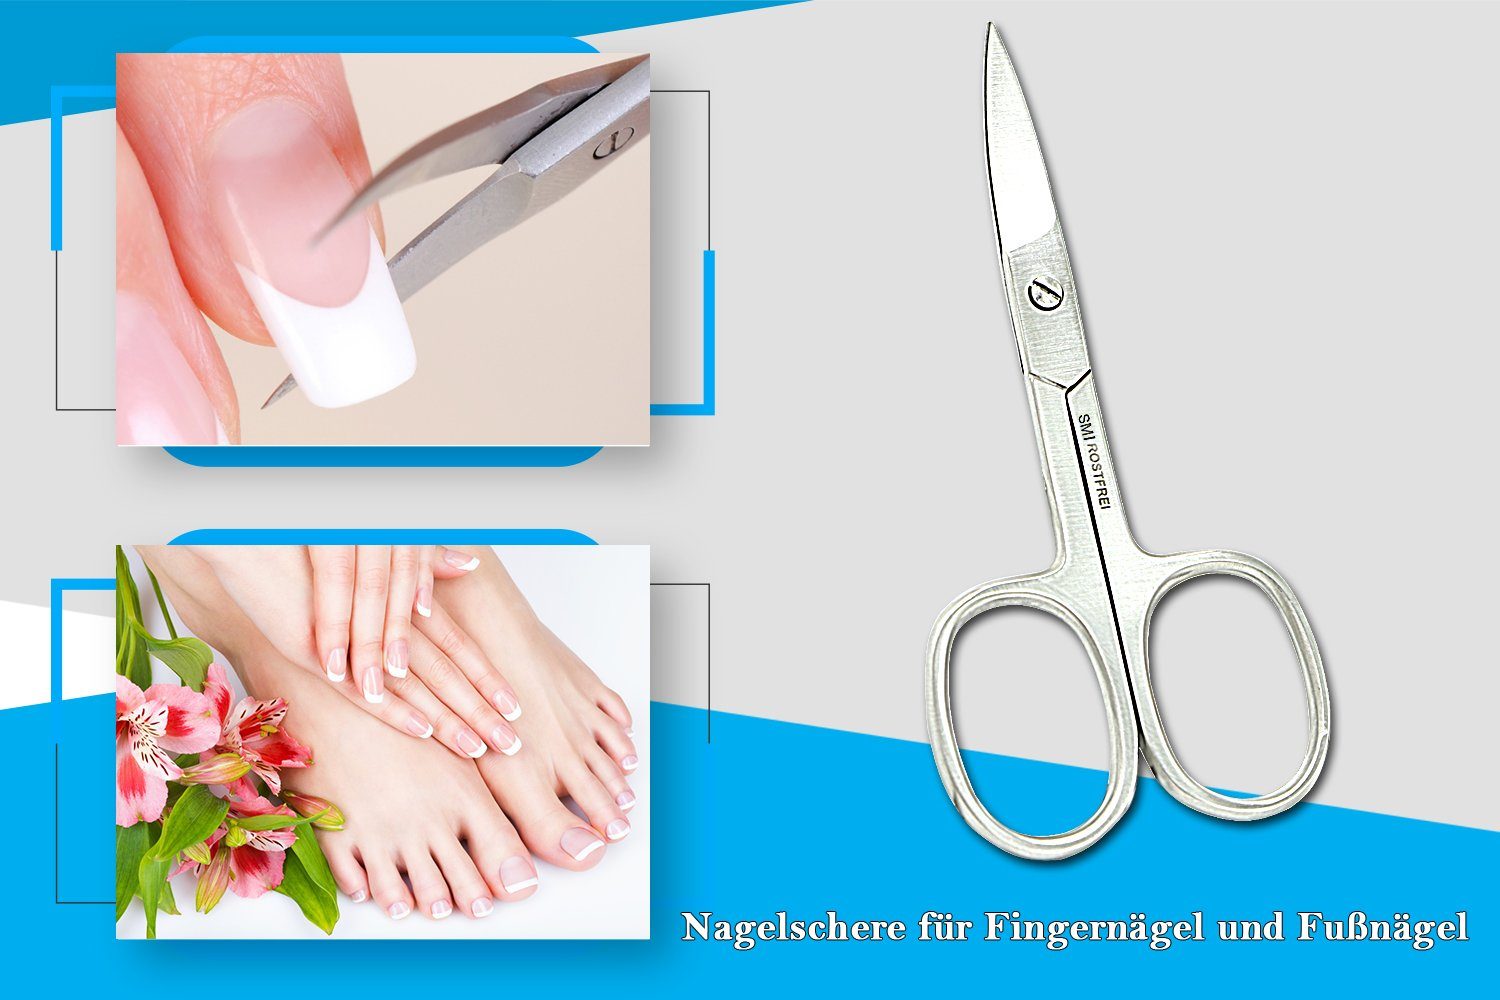 SMI Nagelschere Linkshänder mit Nagelschere Schere Maniküre Etui Fingernagel Pediküre